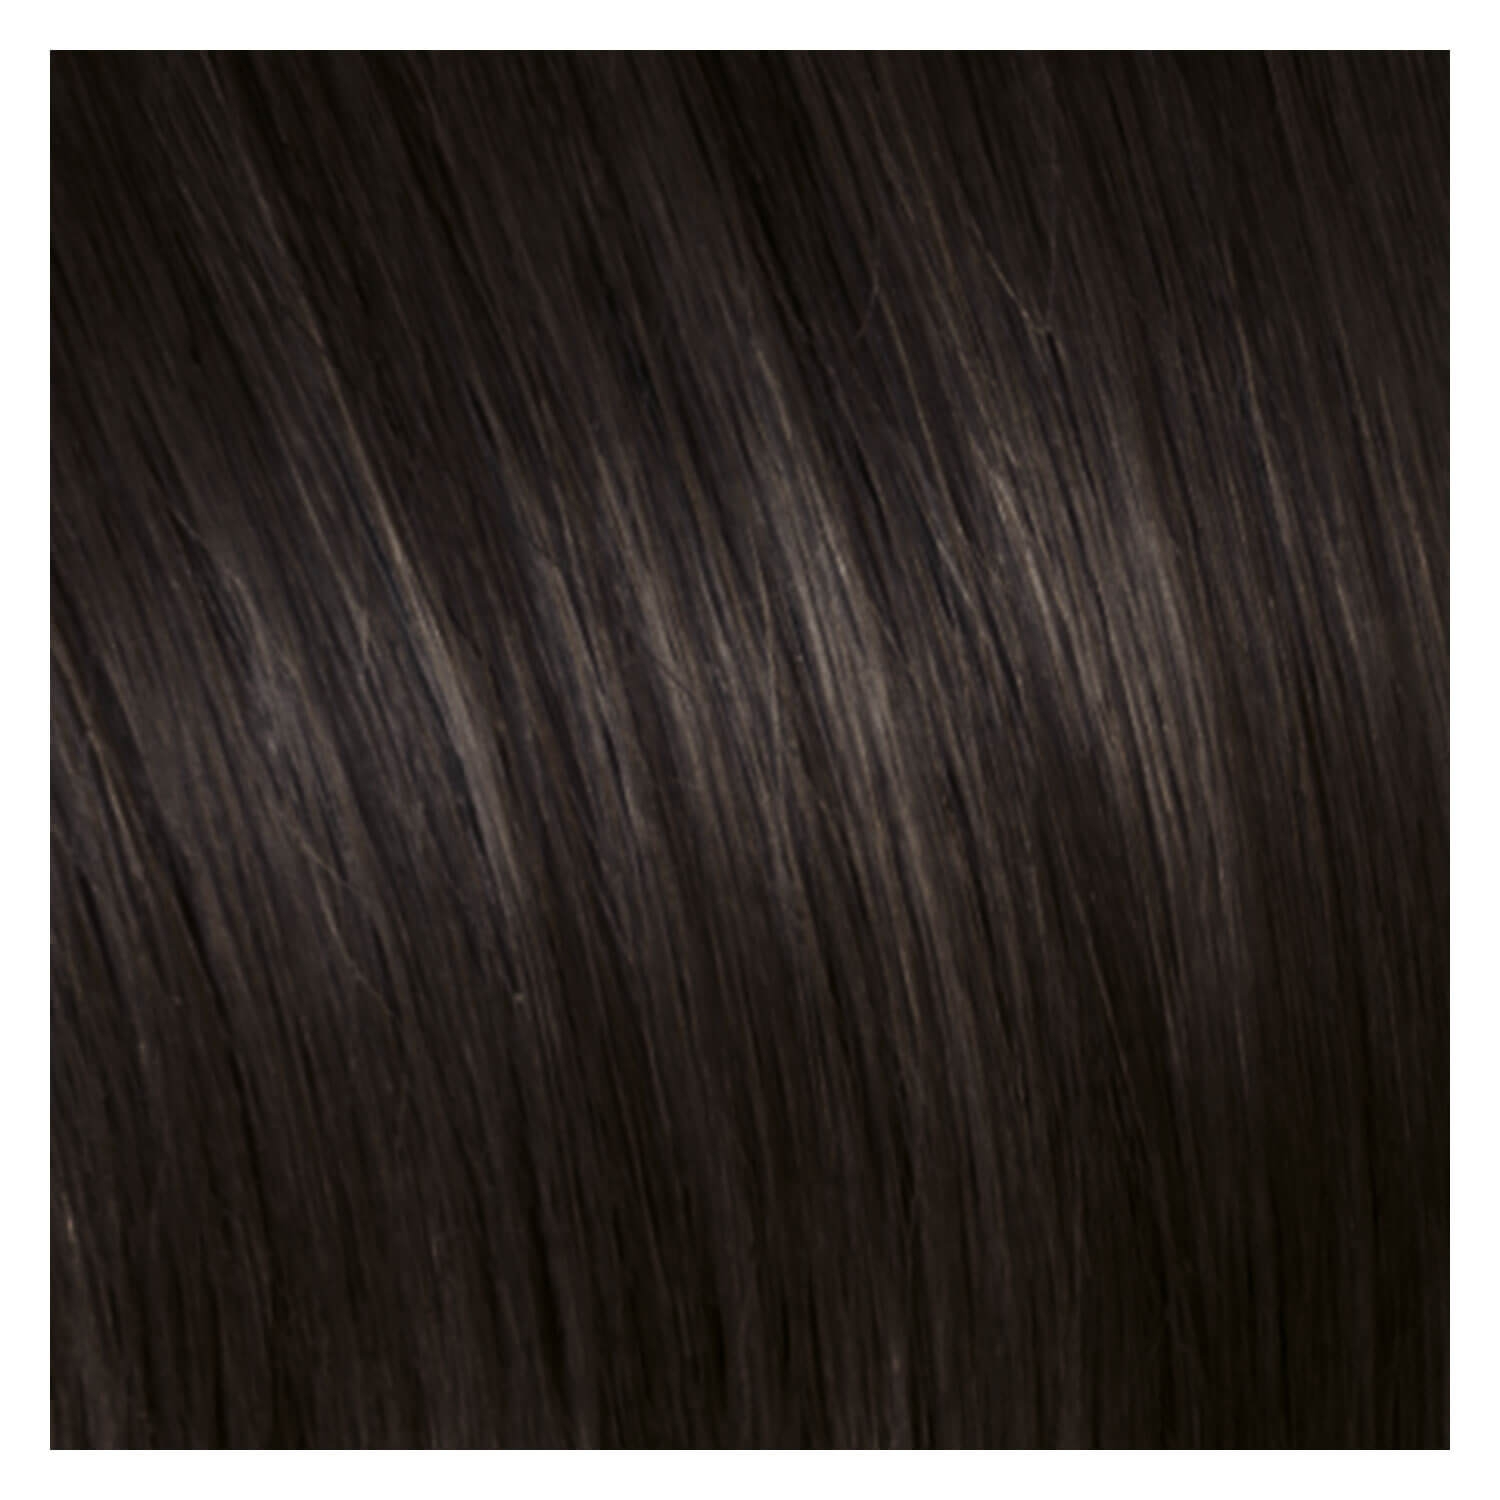 Produktbild von SHE Clip In-System Hair Extensions - 4 Kastanienbraun 50/55cm